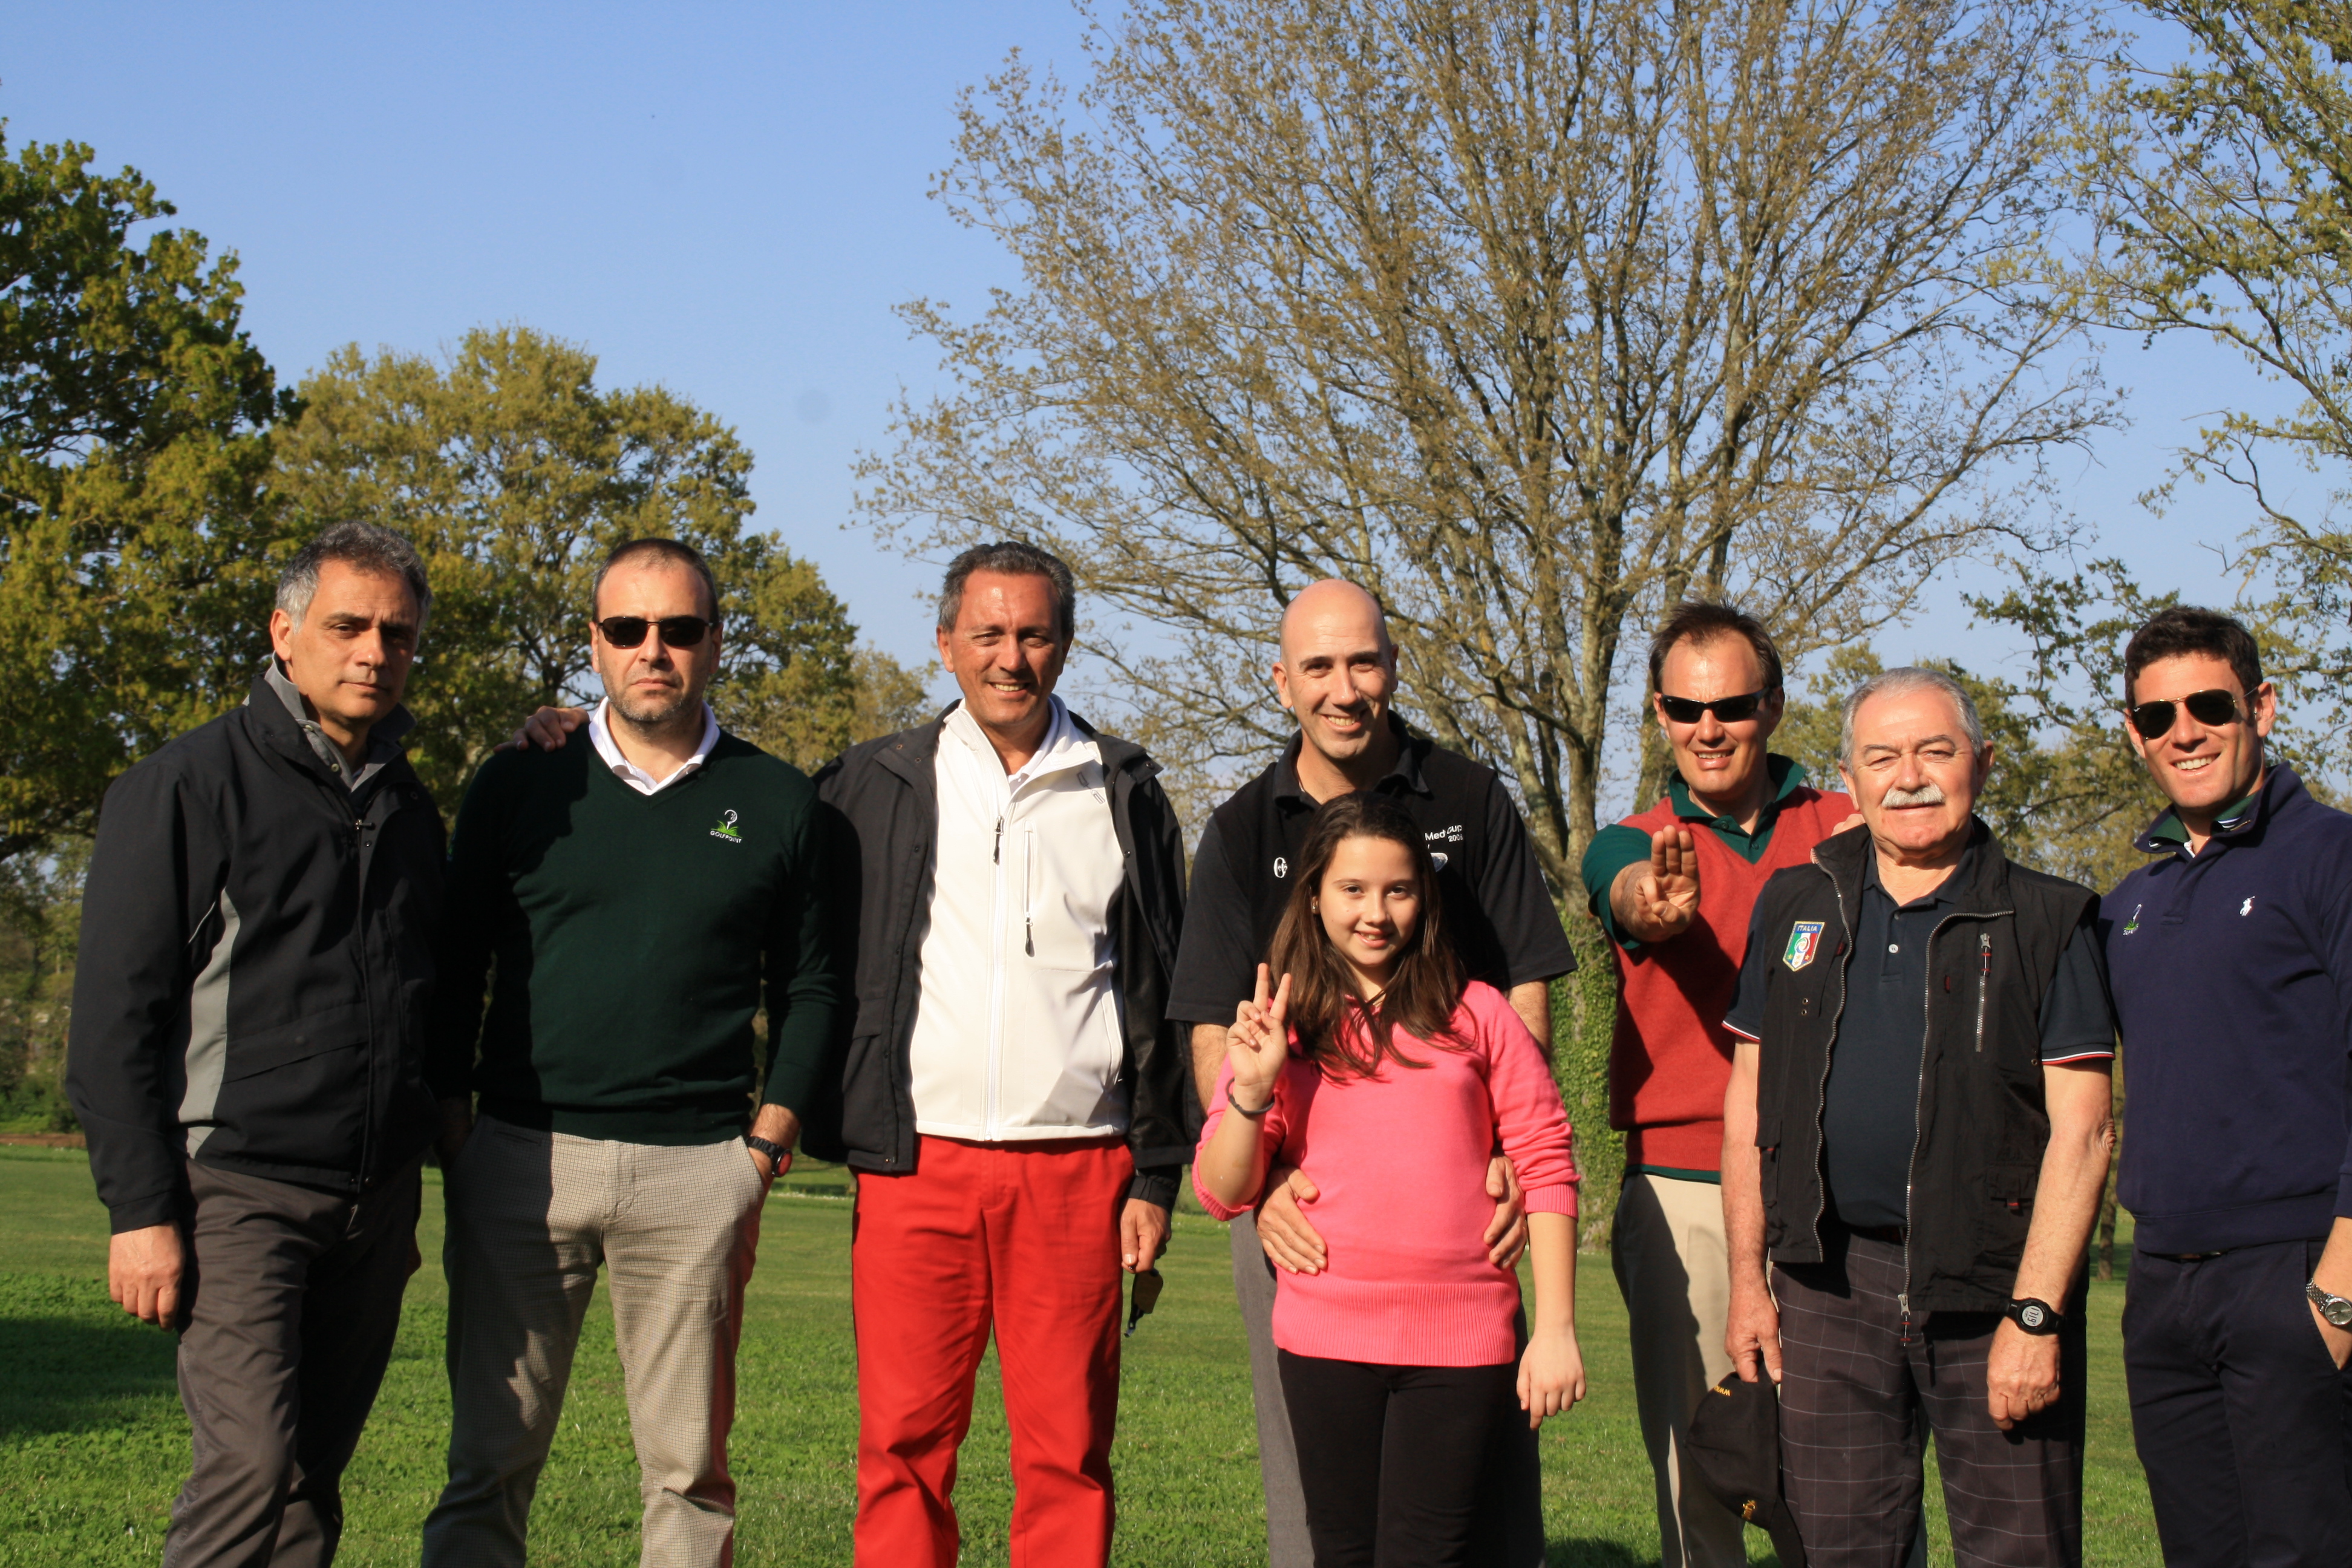 Trackman day al Golf Club Olgiata